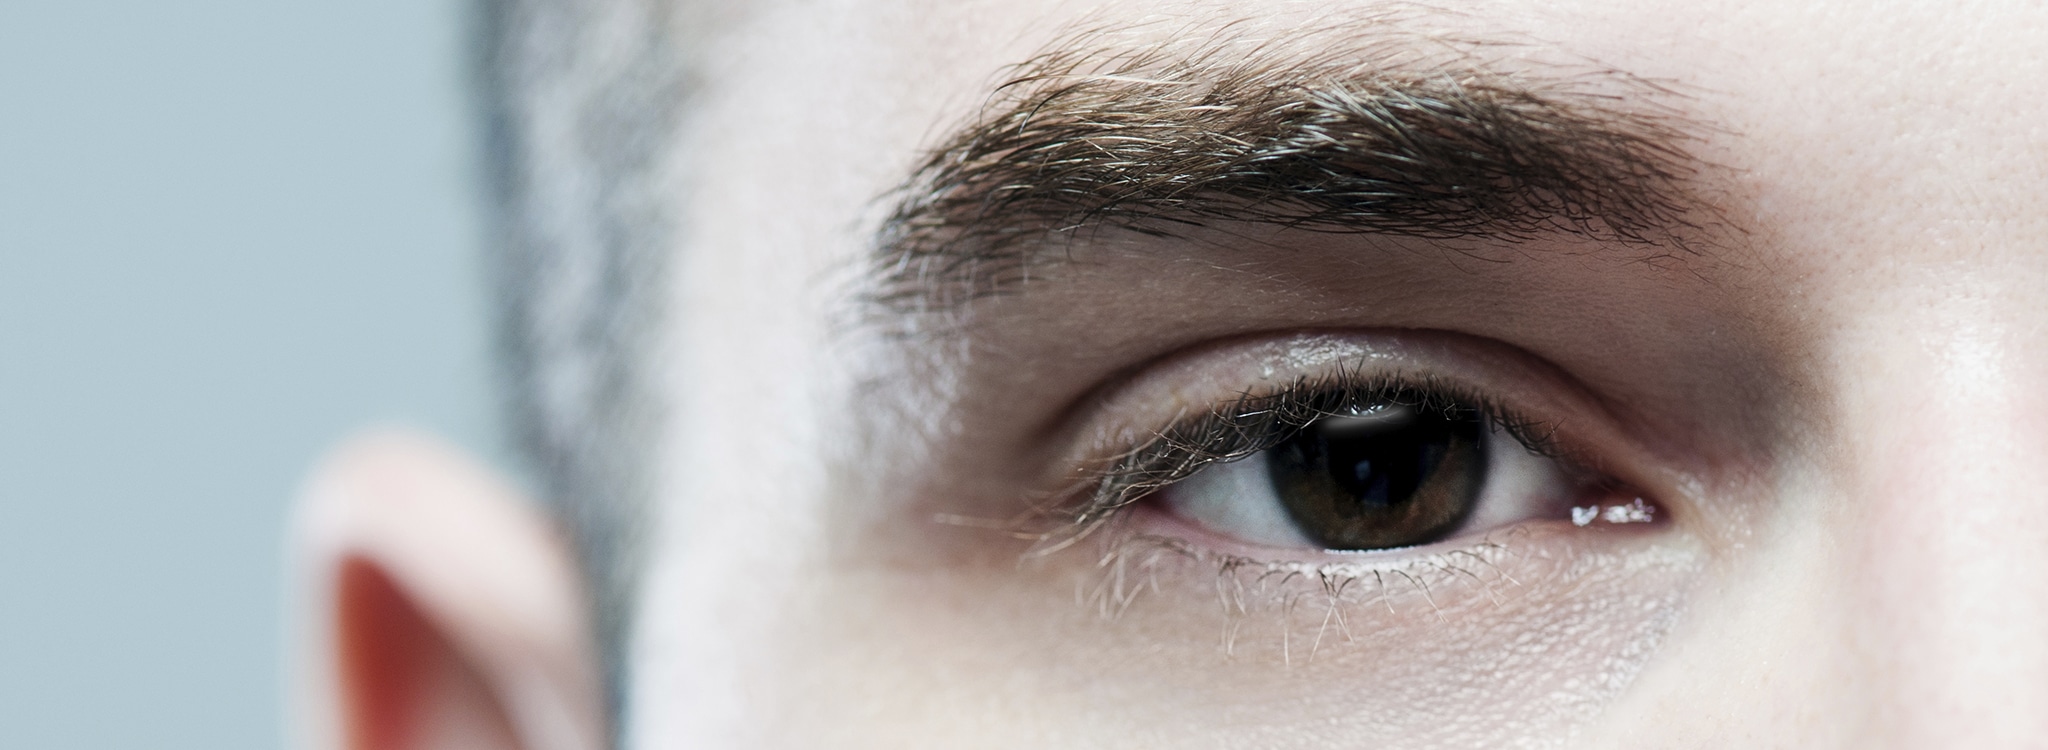 Miopía y retina: Si eres miope, ¡ojo con tu retina!